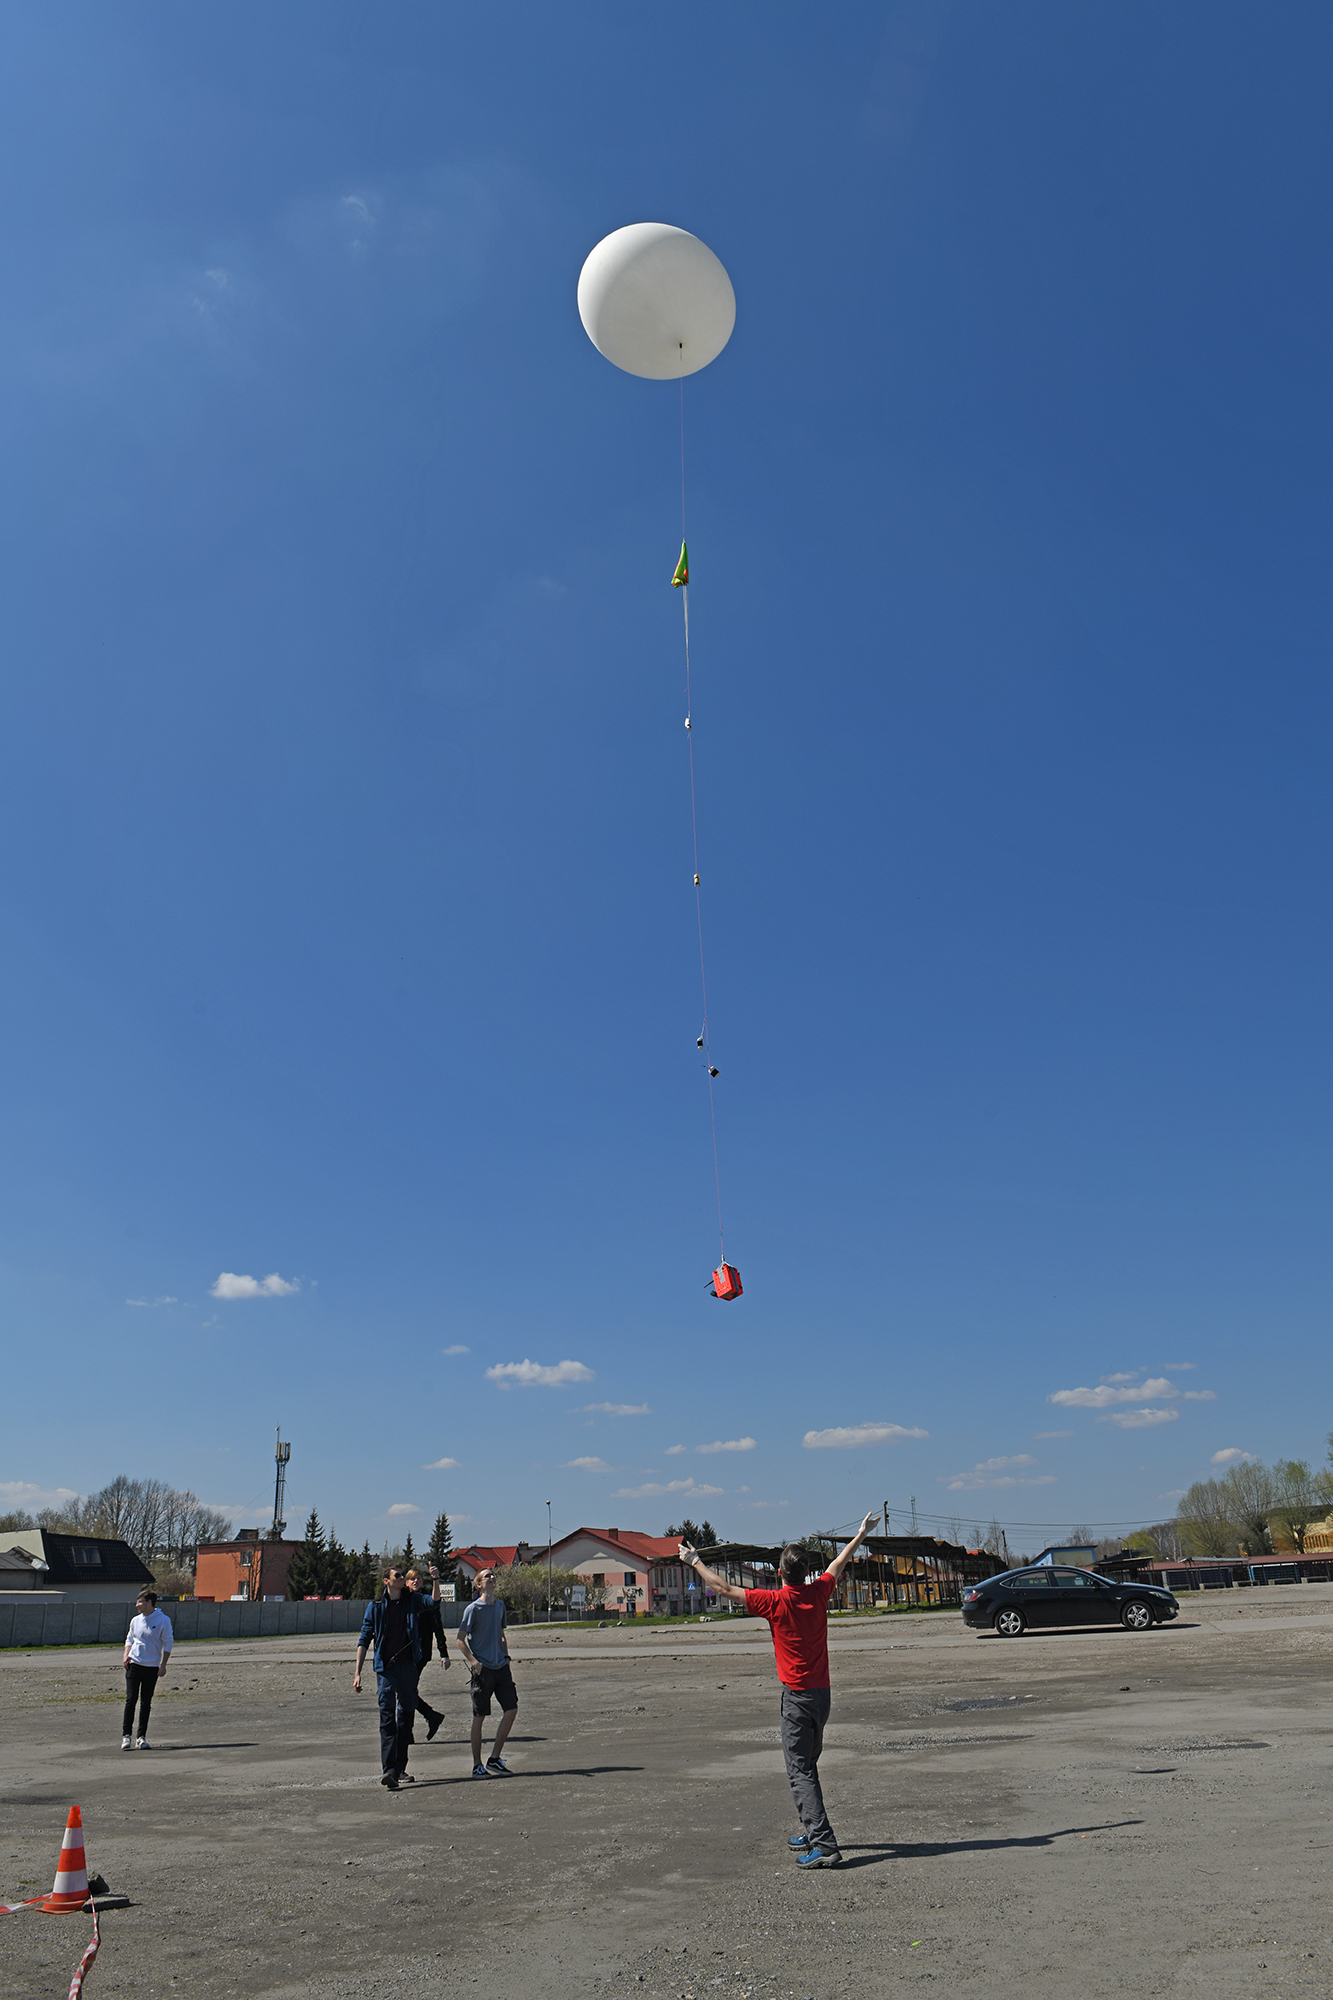 Balon z sondą unosi się w powietrze. Na ziemi stoją członkowie koła naukowego i spoglądają do góry, przyglądając się balonowi.